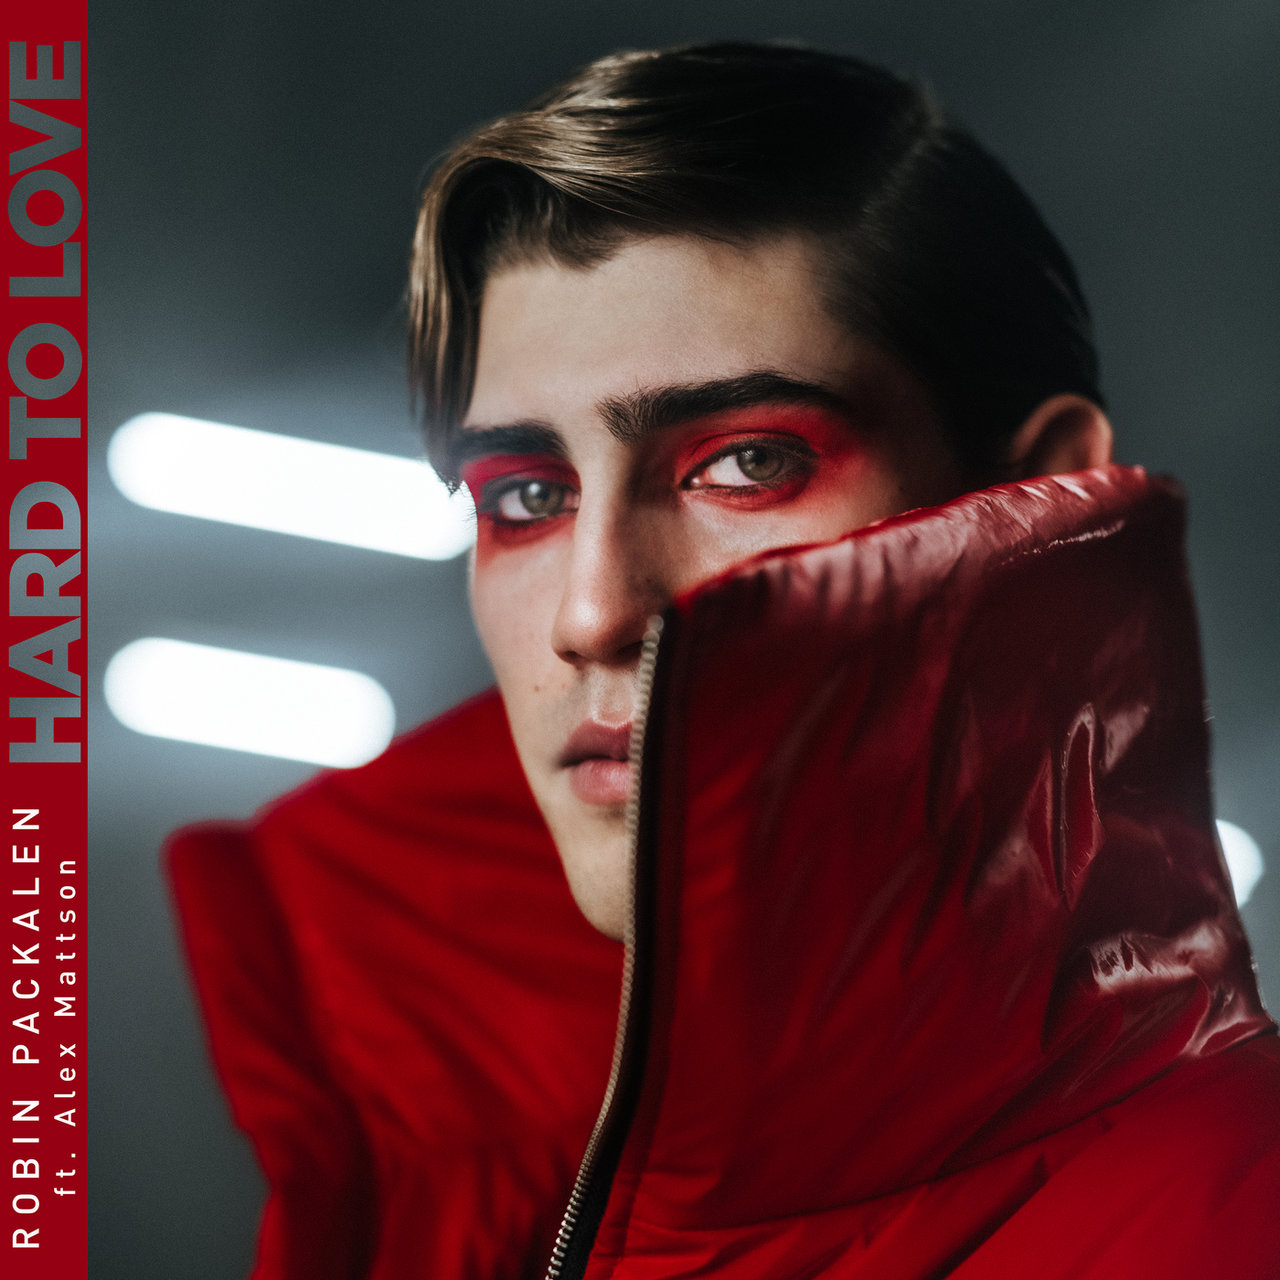 Robin Packalen ft. featuring Alex Mattson Hard to Love cover artwork